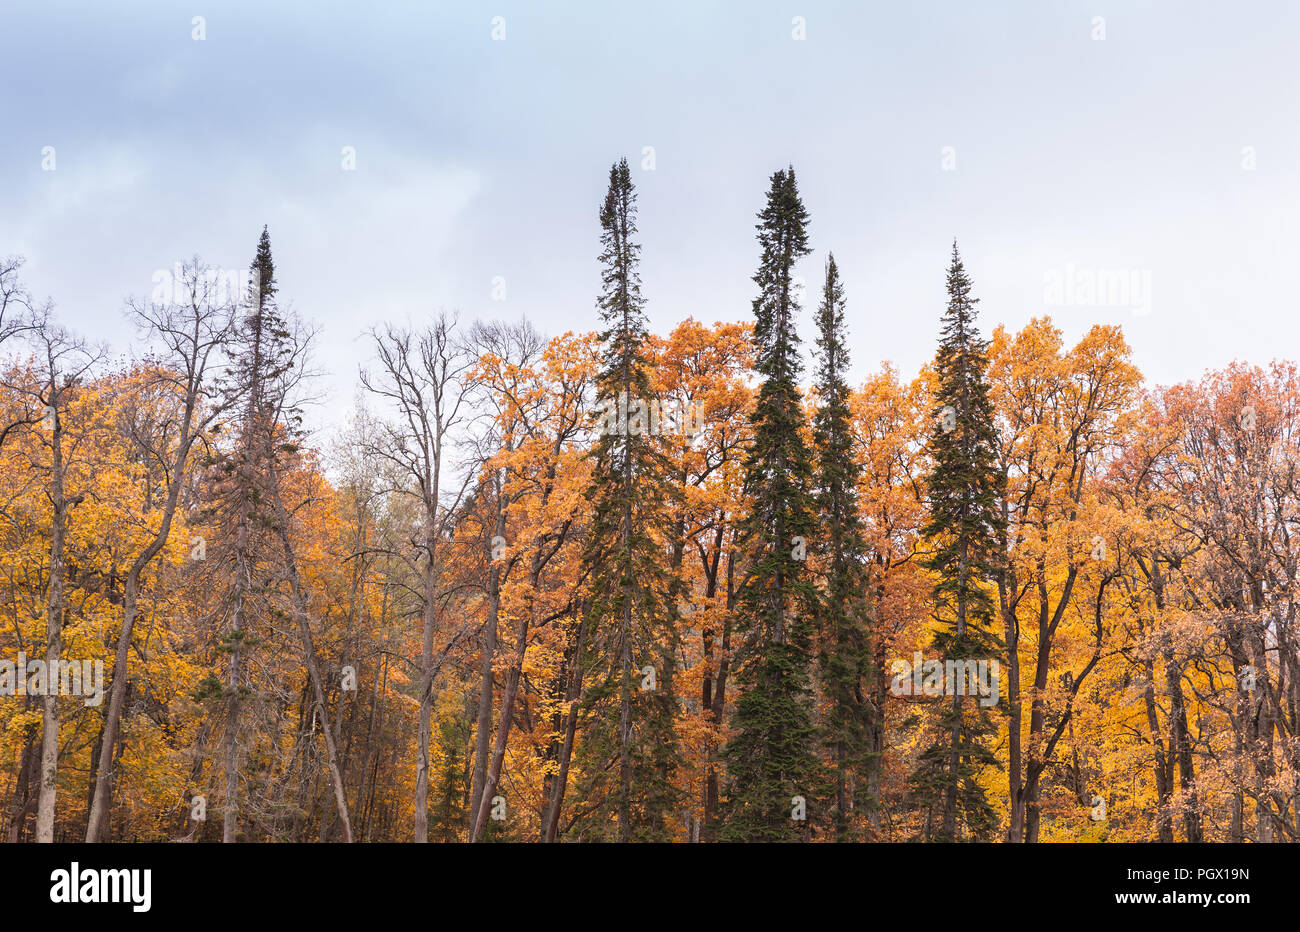 Herbst Wald Hintergrund Foto, Fichte und Ahorn Bäume unter bewölktem Himmel Stockfoto